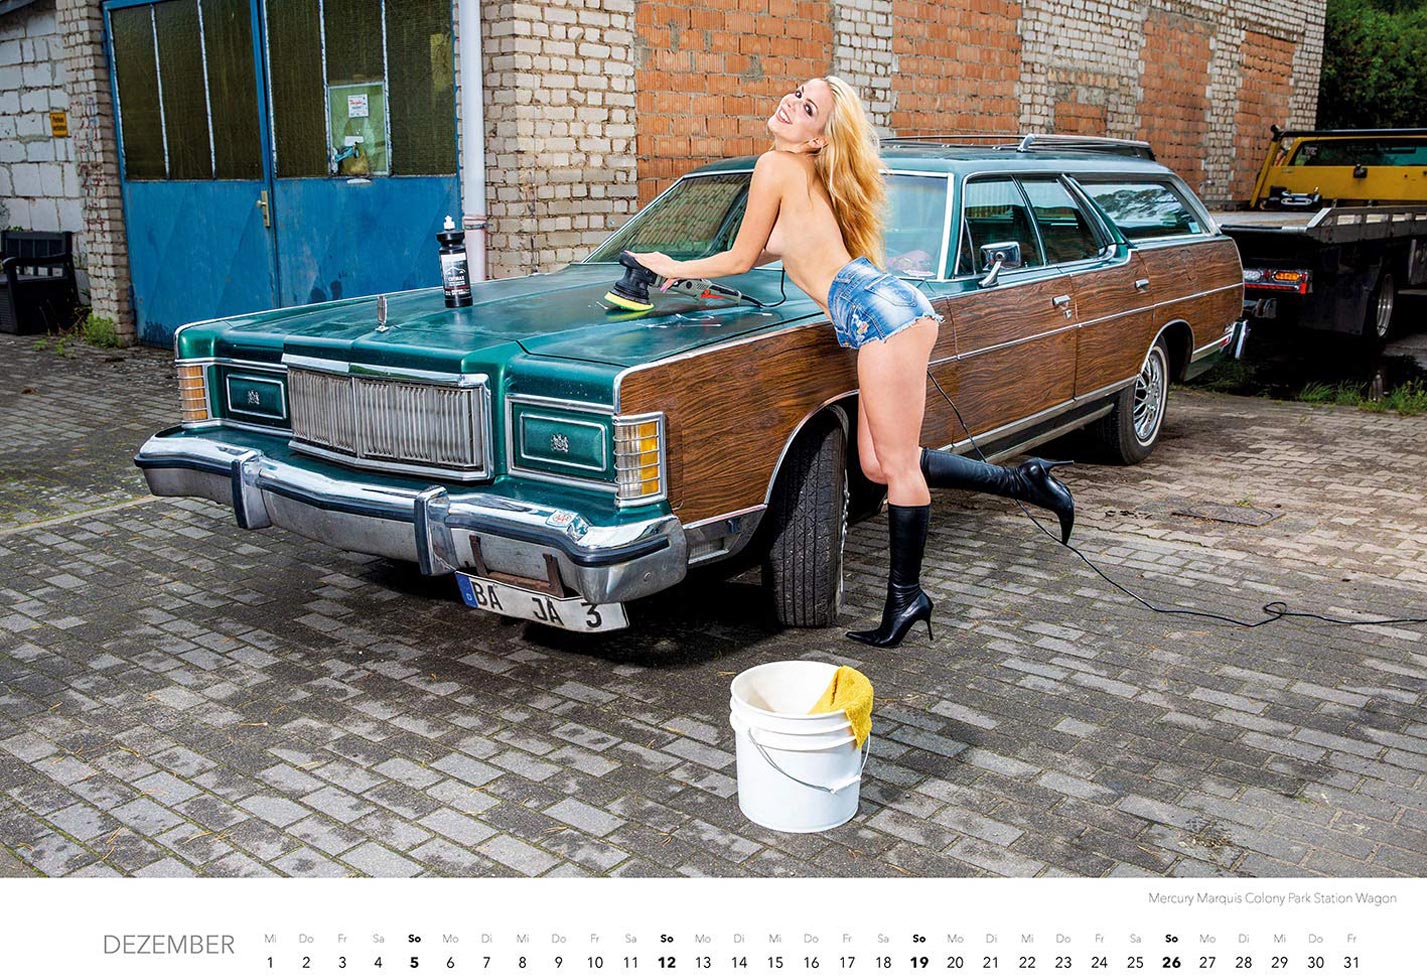 Эротический календарь с сексуальными полуголыми девушками, моющими машины / декабрь